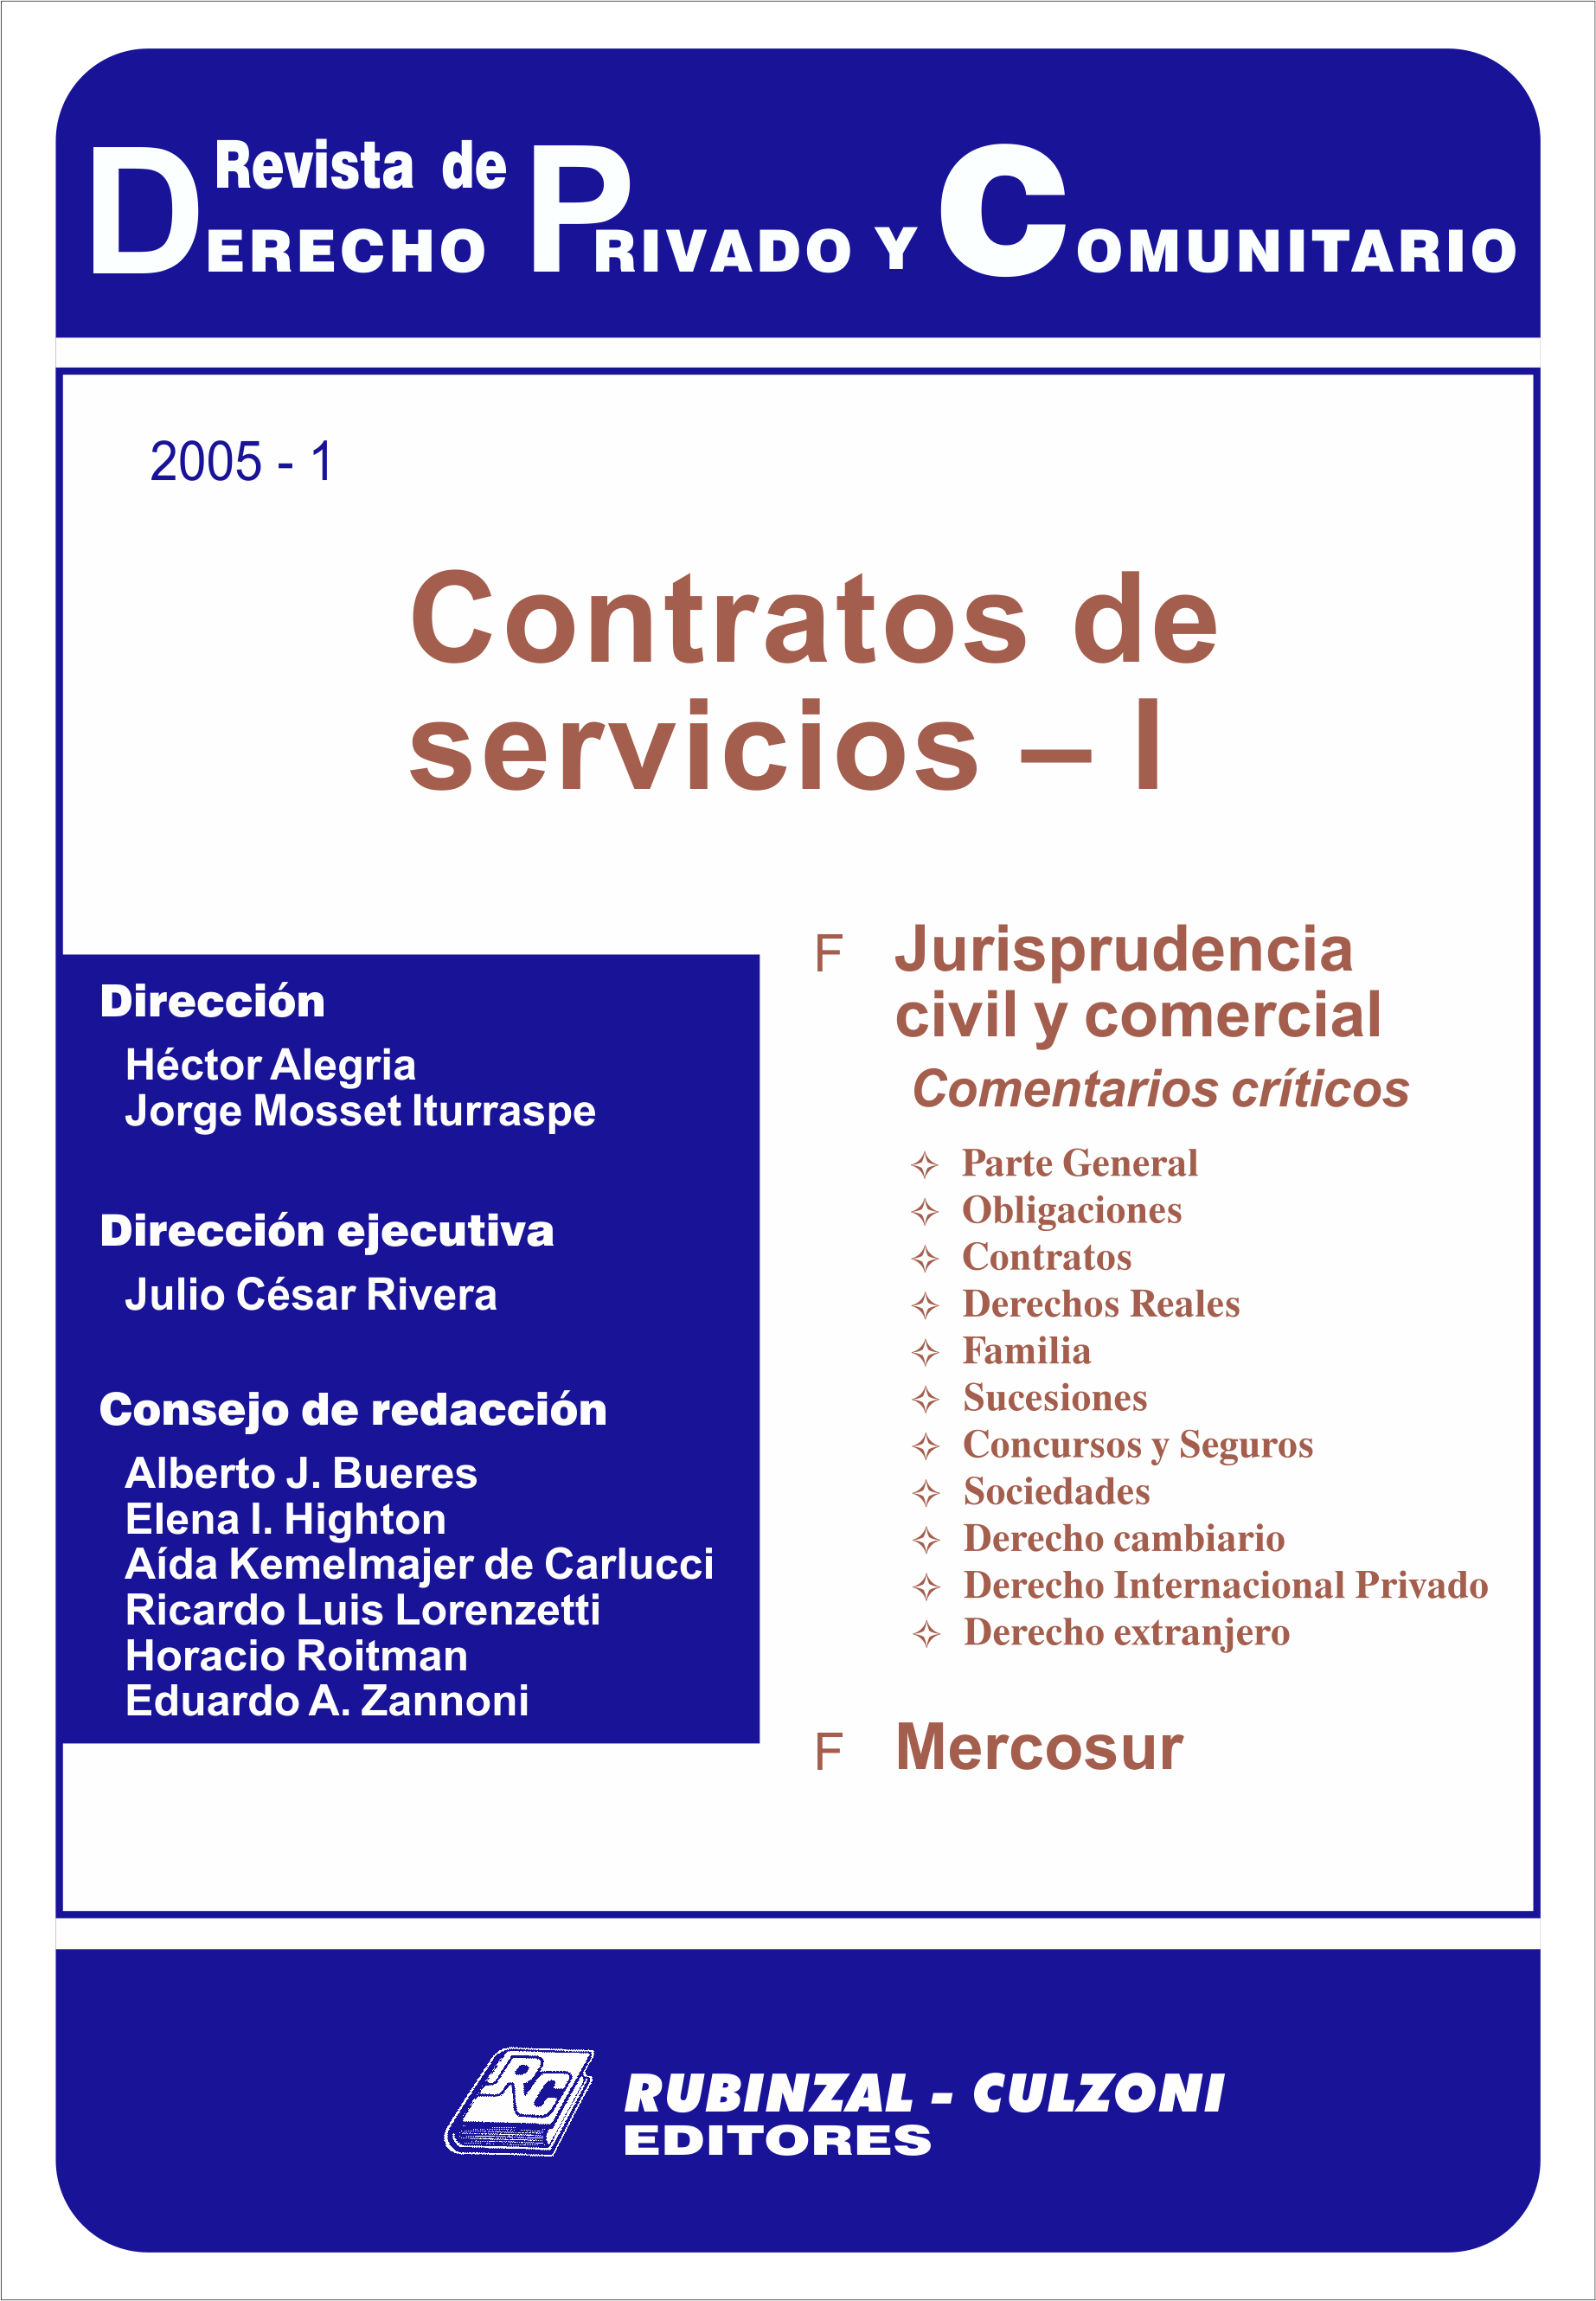 Revista de Derecho Privado y Comunitario - Contratos de servicios - I.